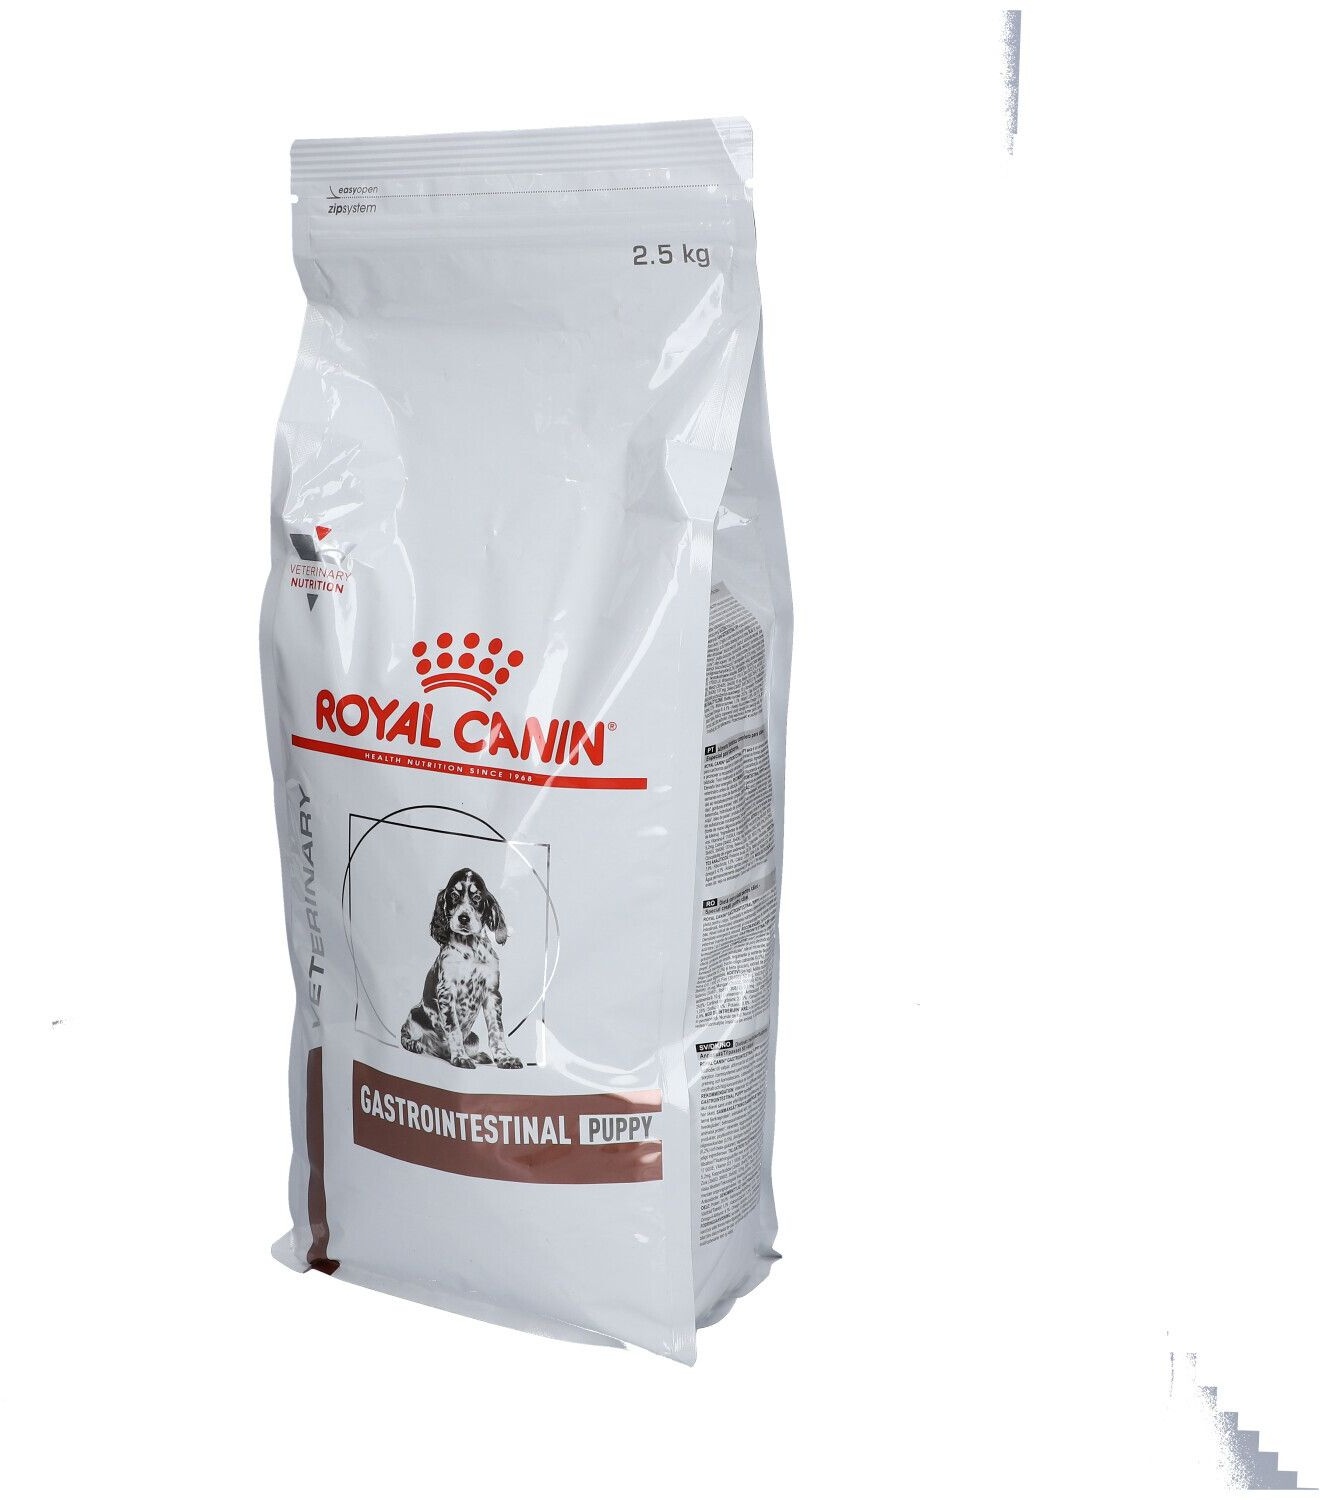 ROYAL CANIN® Gastrointestinal Puppy 2,5 kg